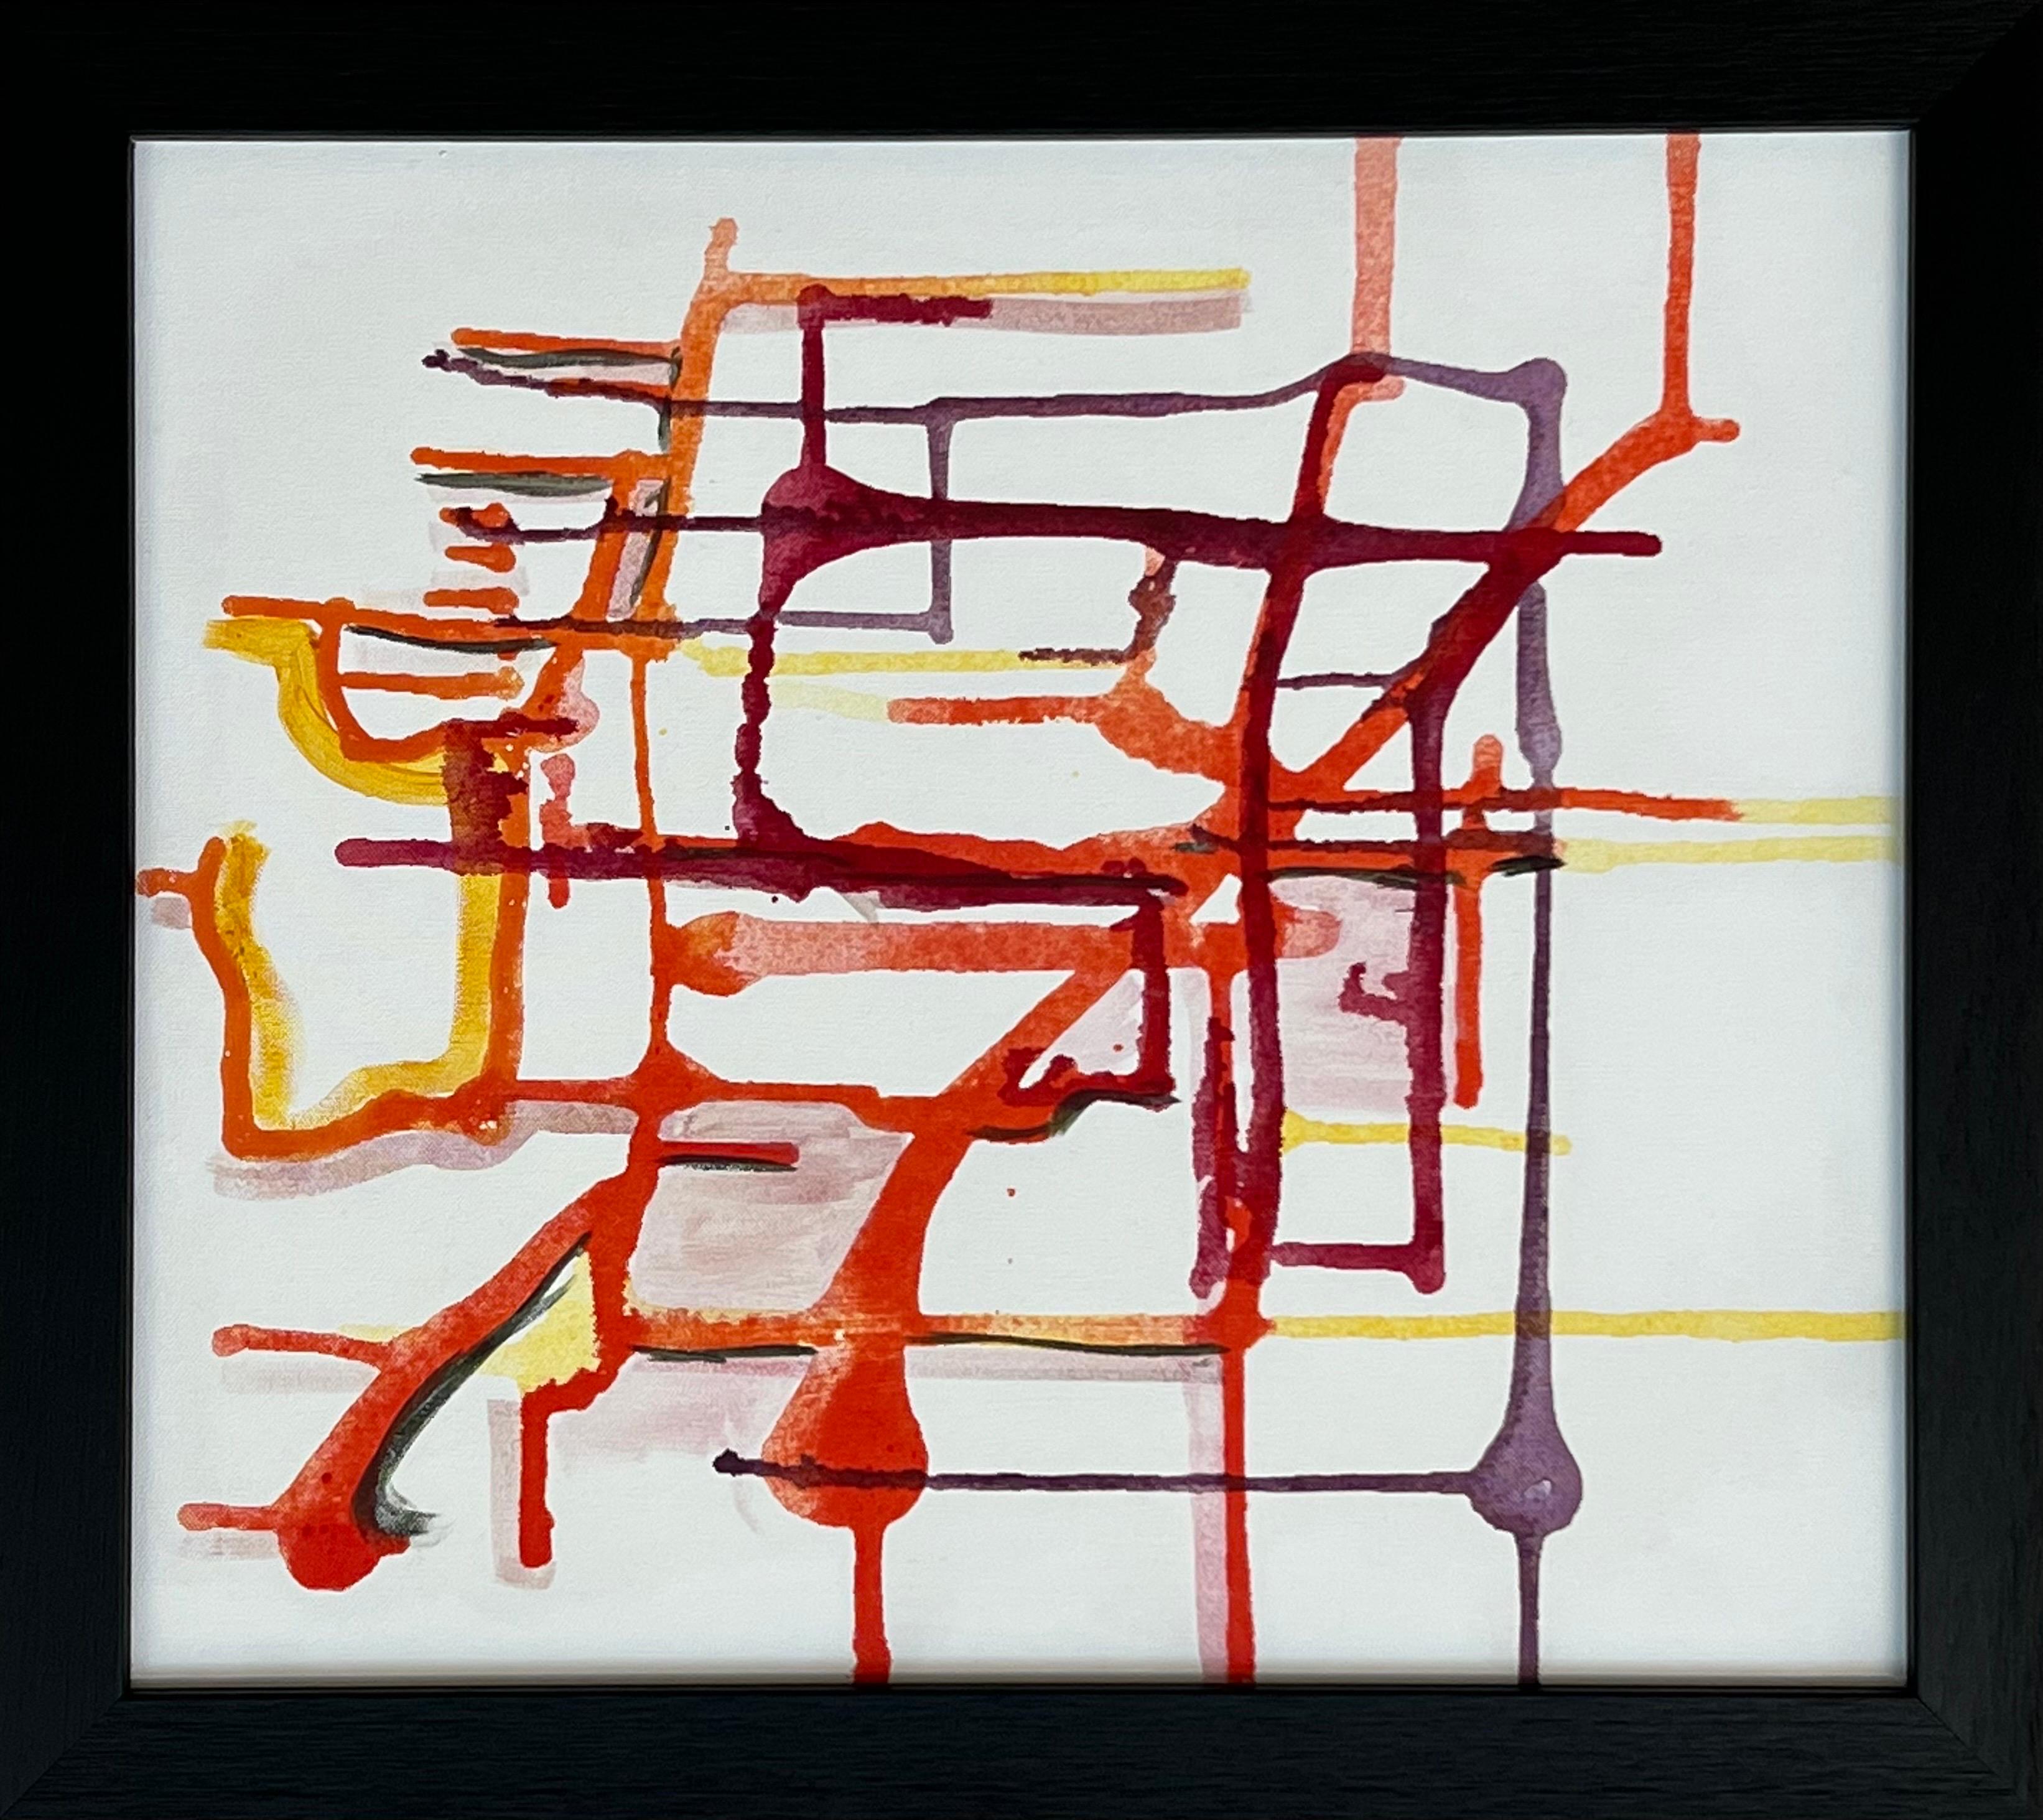 Une rare œuvre d'art abstraite expérimentale de début de carrière utilisant du violet, de l'orange et du jaune sur un fond blanc, réalisée par une artiste britannique contemporaine de premier plan, Angela Wakefield. 

L'œuvre d'art mesure 20 x 18